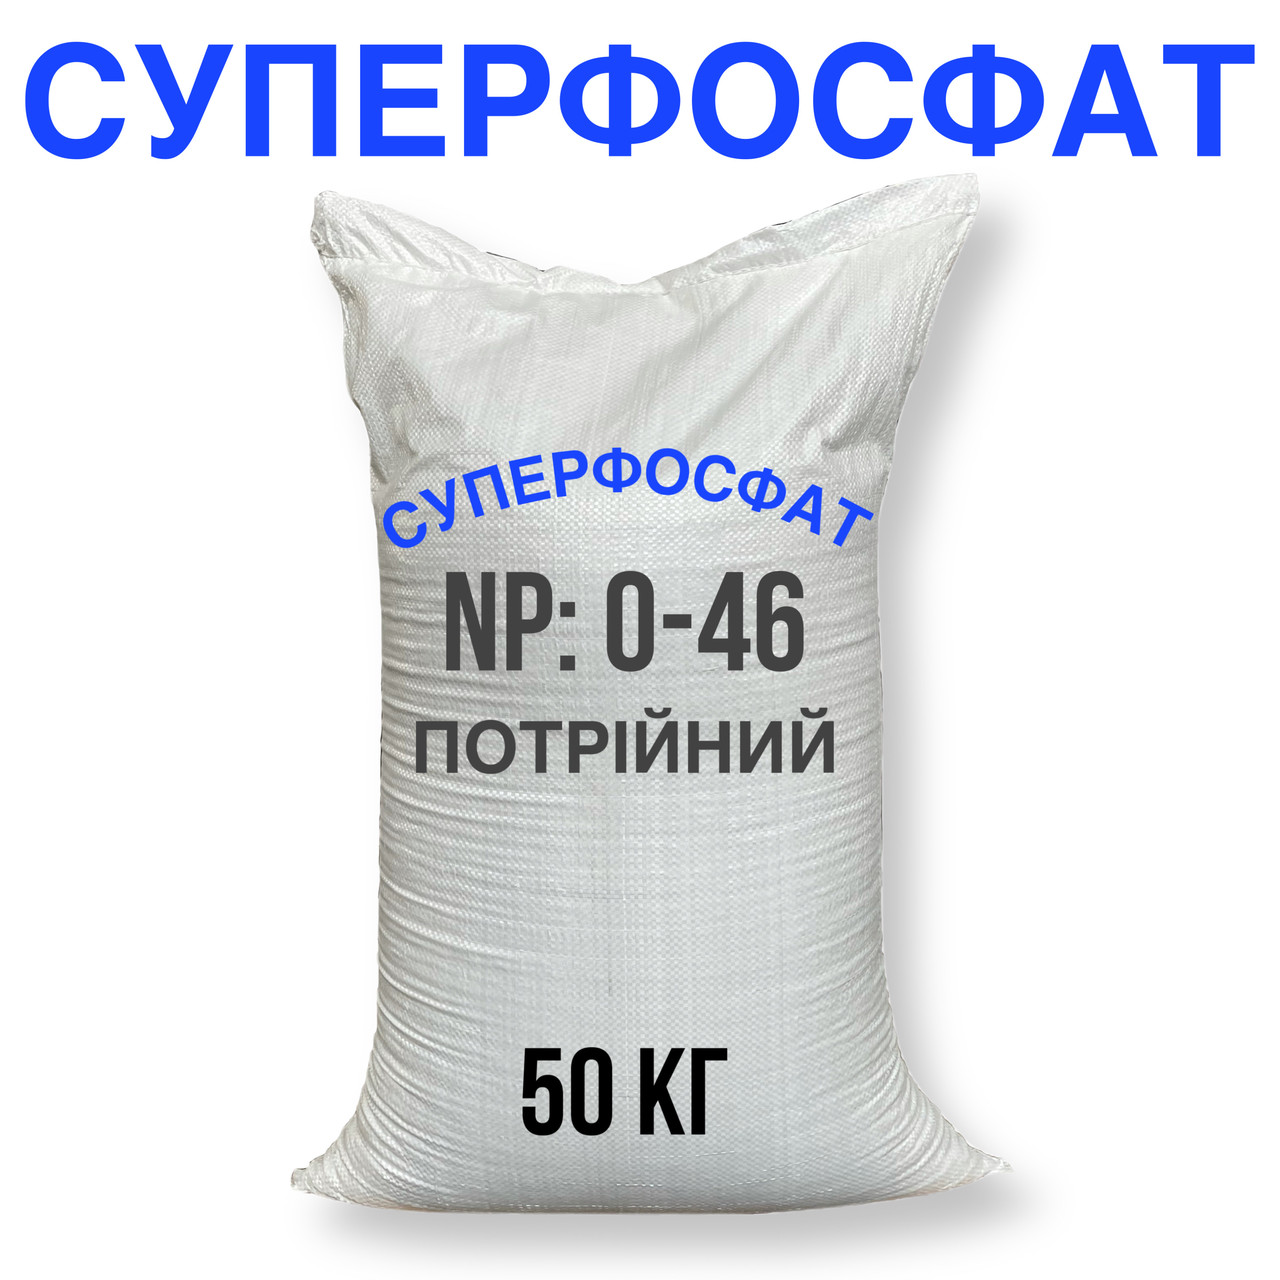 СУПЕРФОСФАТ ТРОЙНОЙ AGROPOLYCHIM (мешок 50 кг)